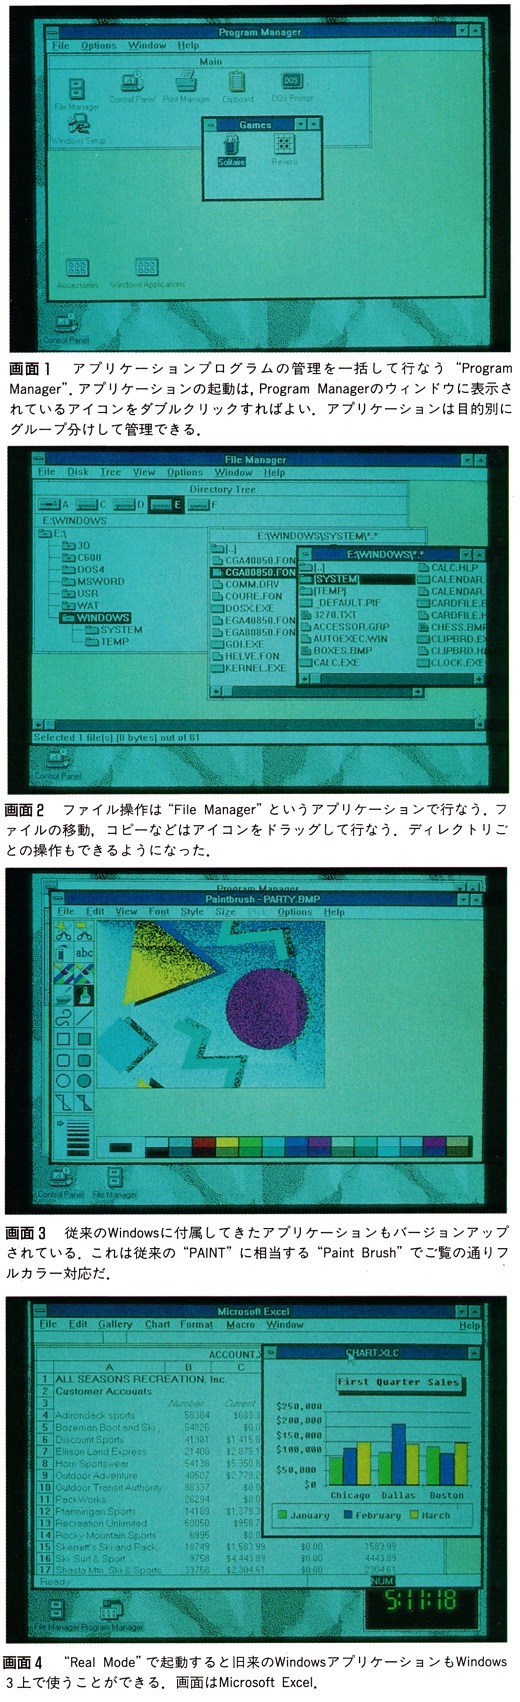 ASCII1990(07)b25Window3画面_W520.jpg